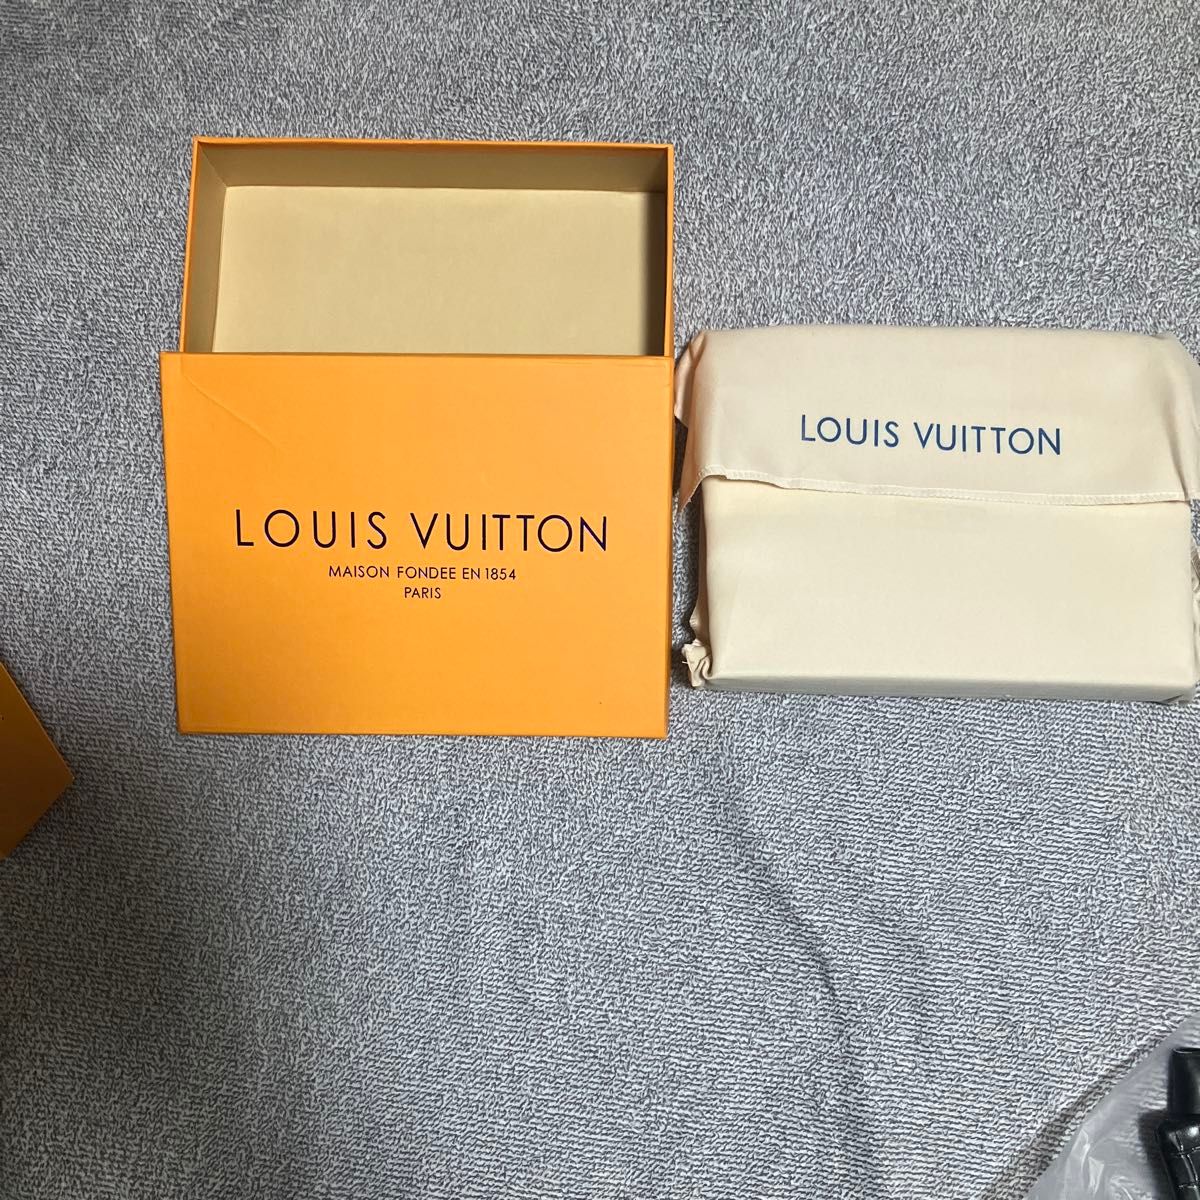 LOUIS VUITTONの香港直営店で購入した商品です。未使用です。使用しないのでお譲りします。認証ナンバーは63471です。